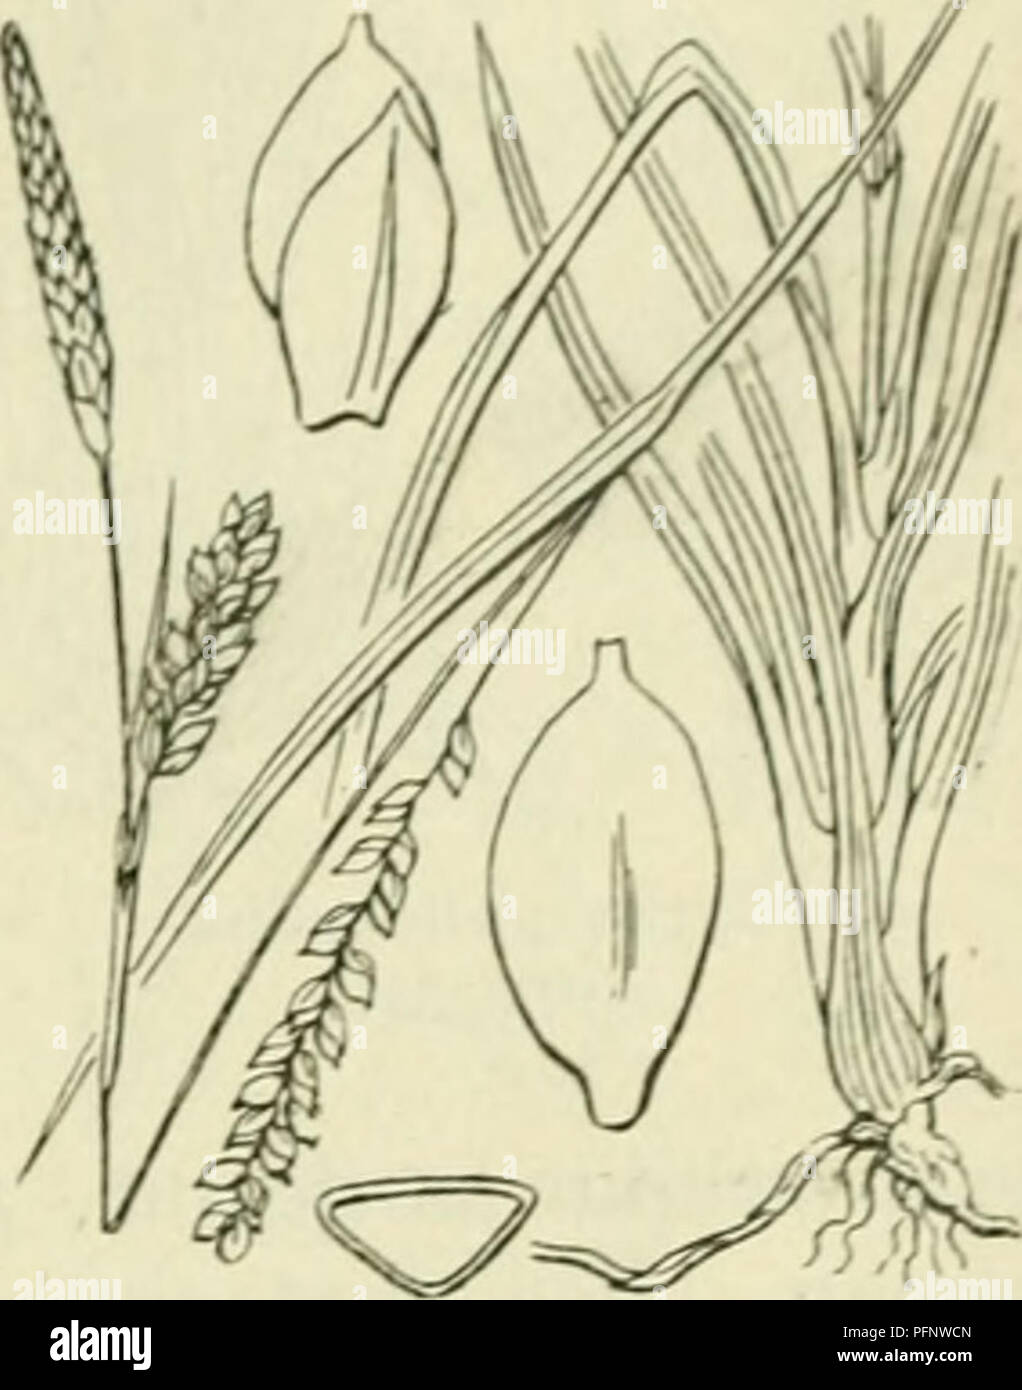 . De flora van Nederland. Plants. FAMILIE 17. CYPERACEAE. — 399. Carex panicea Fig. 320. Voorkomen in Europa en in Nederland. De plant komt in West-Europa in duinvalleien voor. Zij is bij ons vrij algemeen. C. panicea') L. Blauwe zegge (fig. 320). Deze soort is grijsgroen. Zij heeft een kraclitigen, aan den top vaak vrij dikken wortelstok. Deze is aan dien top meest dicht met de bruine, zelden witte, rafelende overblijfsels van afgestorven scheeden bezet en heeft uitloopers. De stengel is meest rechtopstaand, glad, alleen beneden bebladerd. De onderste bladen hebben bruine, niet rafelende sche Stock Photo